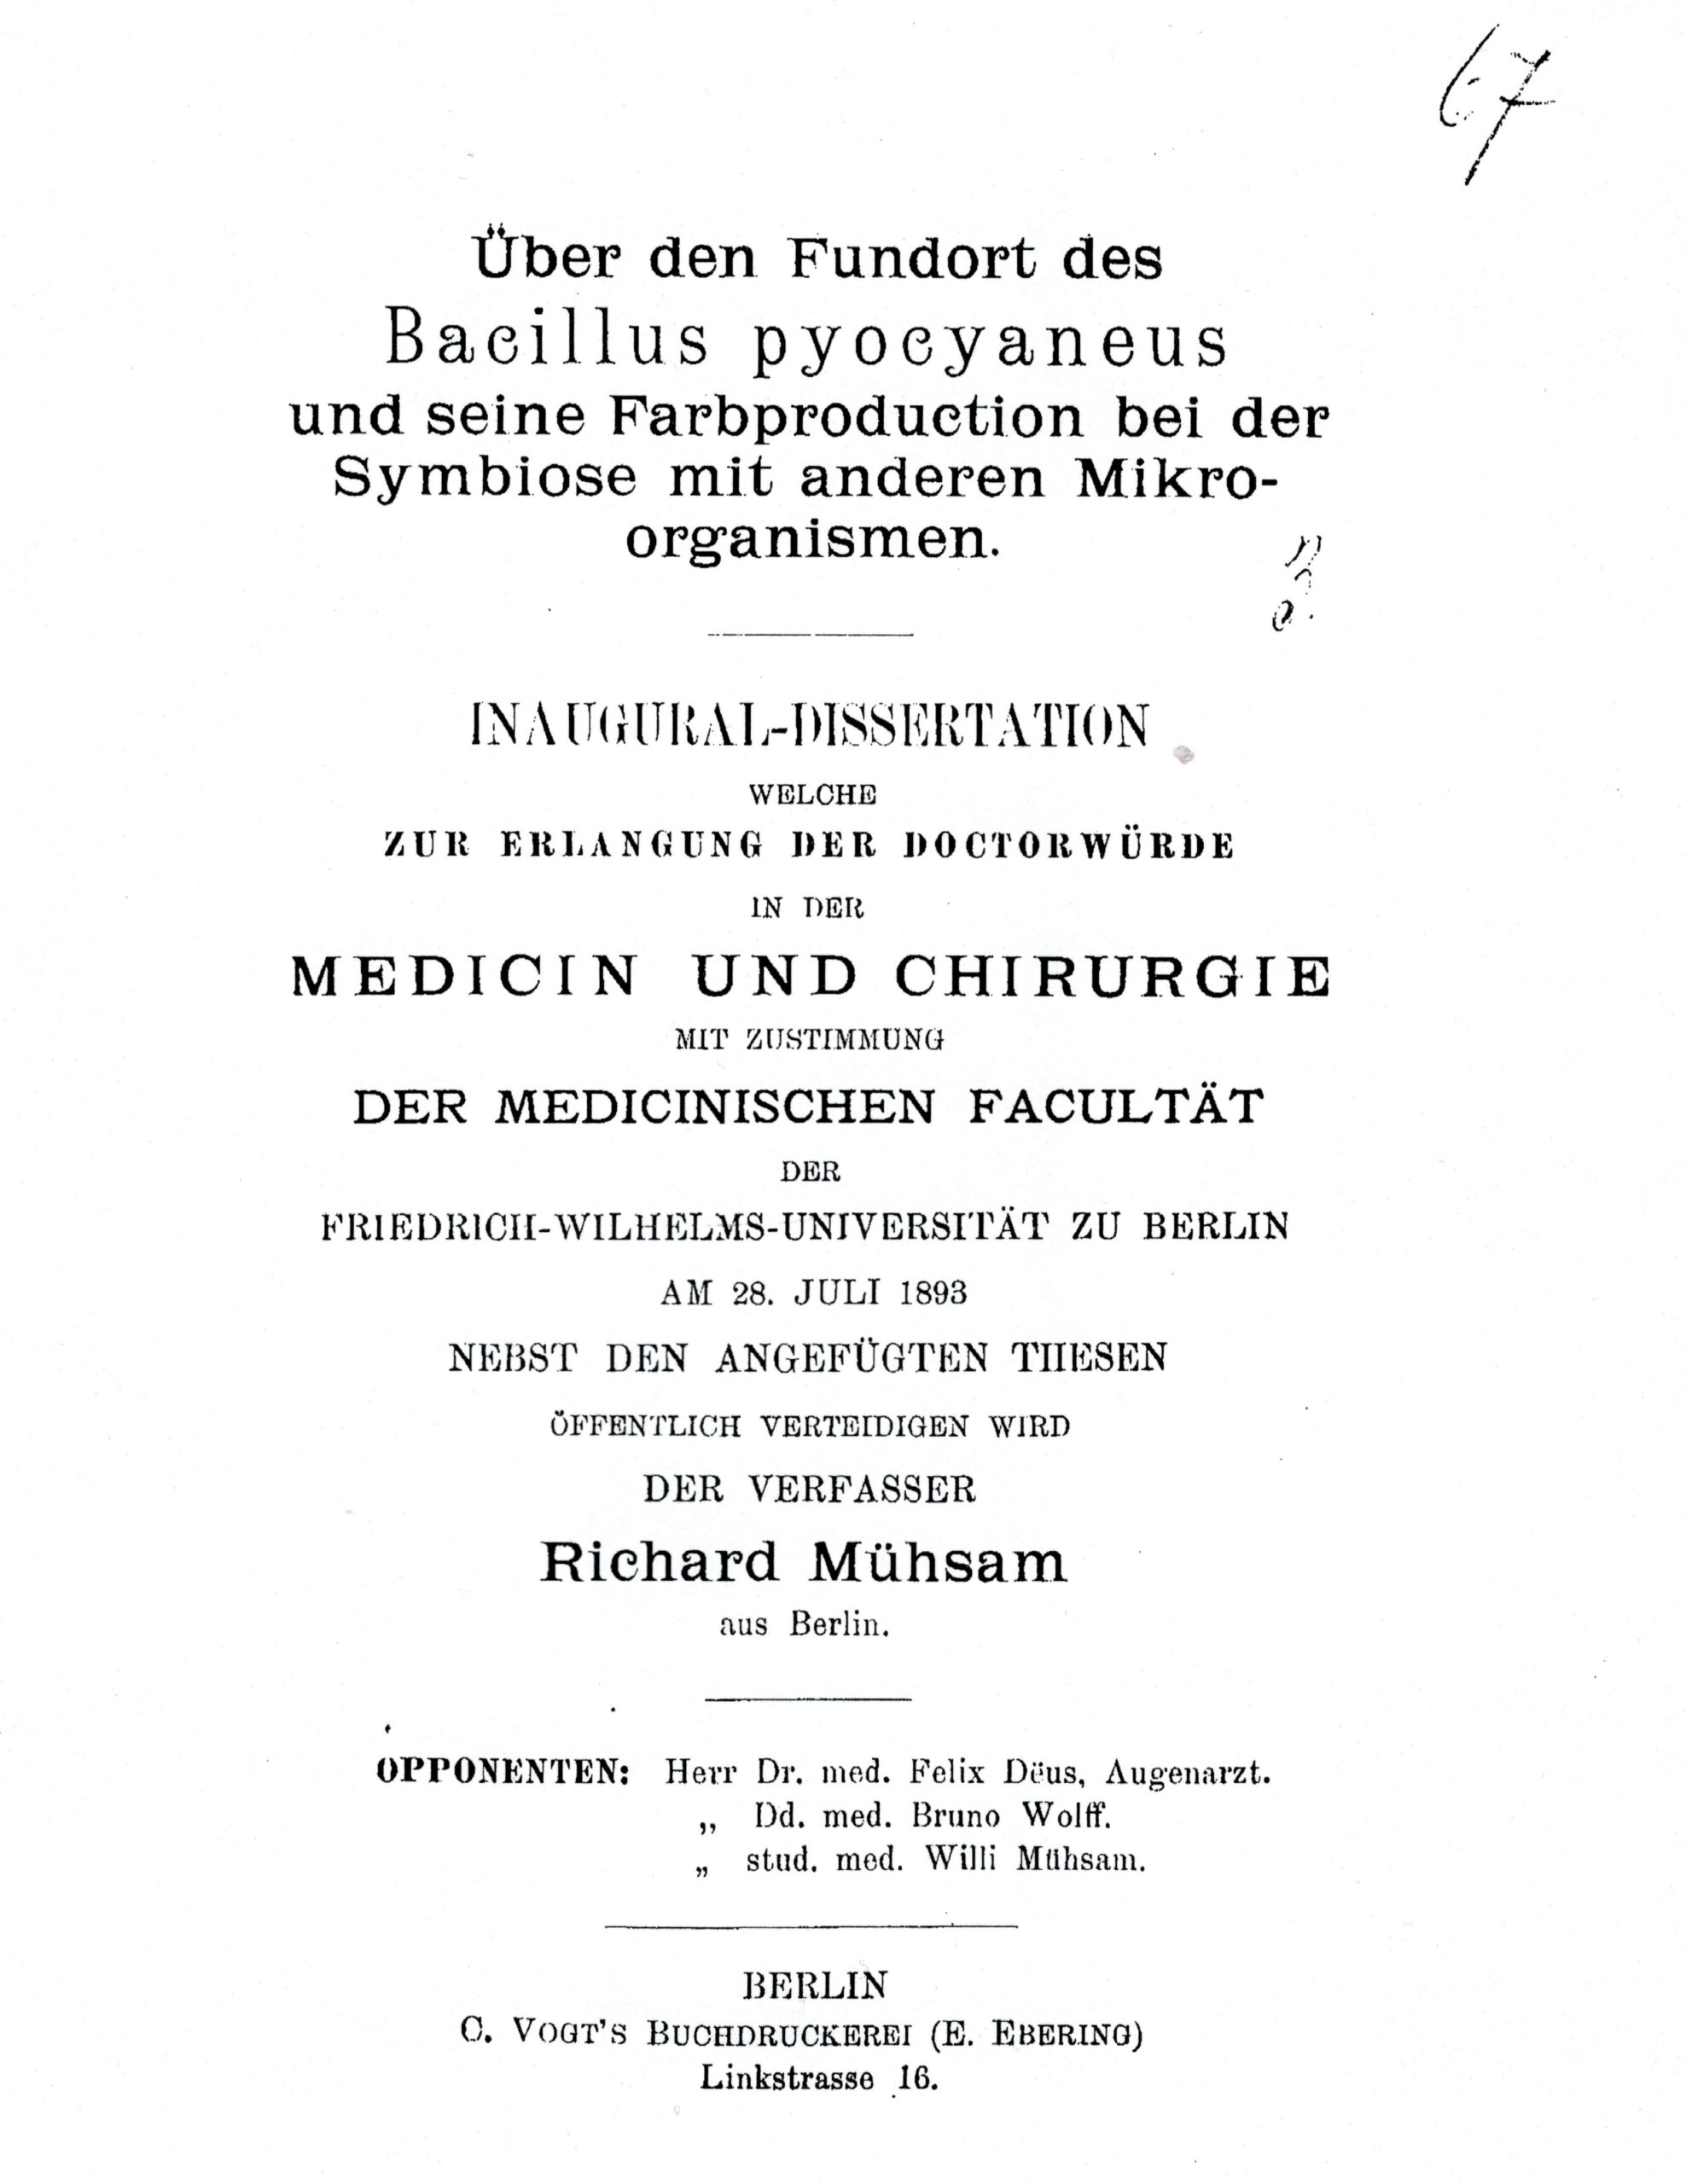 Dissertation, Berlin 1893